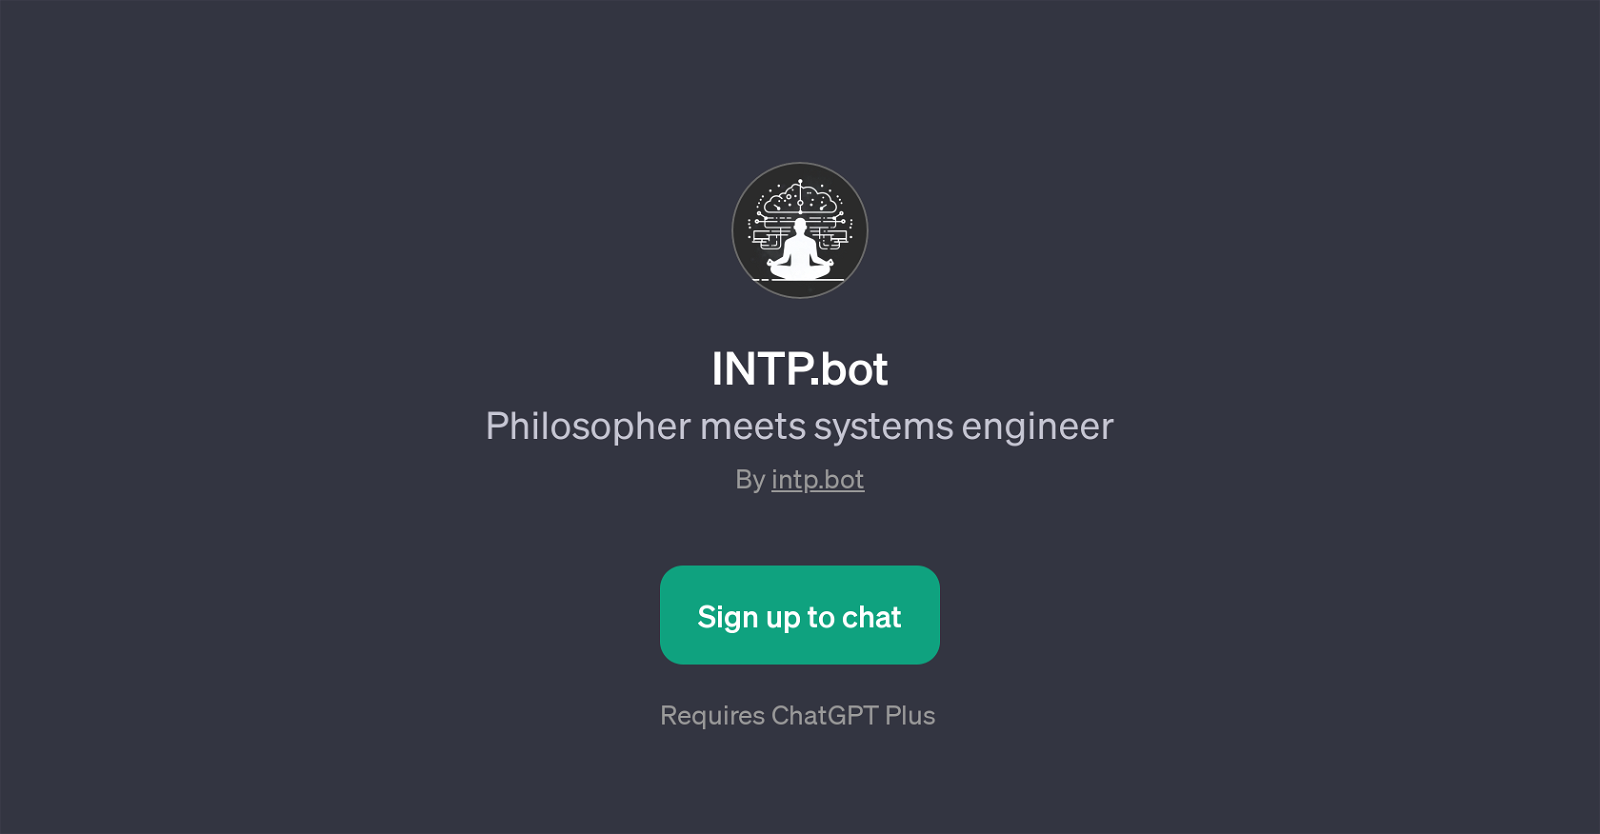 INTP.bot website